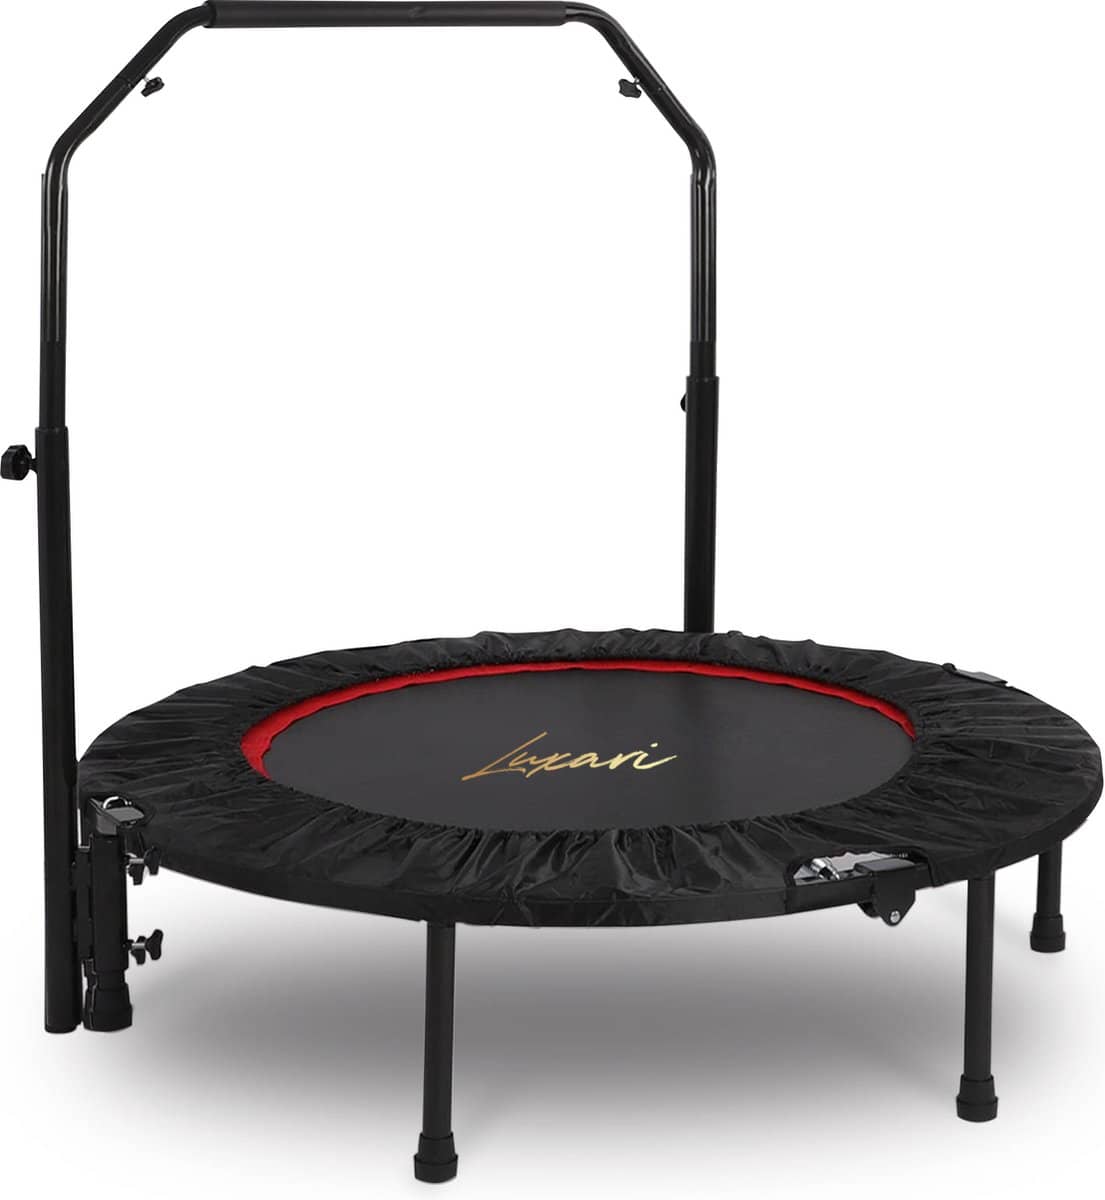 Luxari – Hoogwaardige fitness bounce trampoline. Opvouwbare mini trampoline